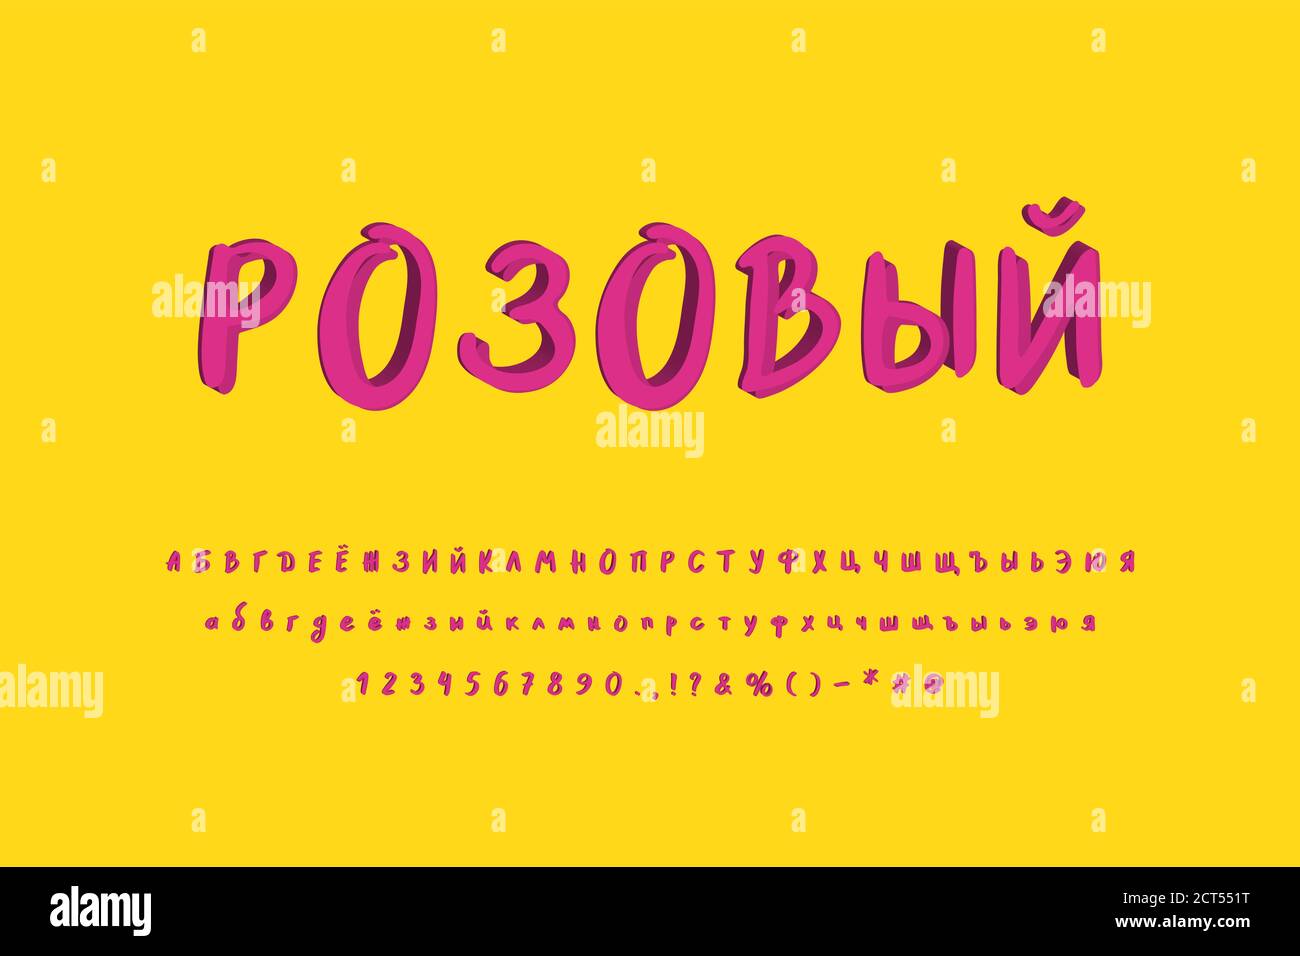 Vettore di pittura Typeface cirillico. Colori magenta rosa. Lettere maiuscole e minuscole, numeri. Font 3D originale per un design moderno. Illustrazione Vettoriale